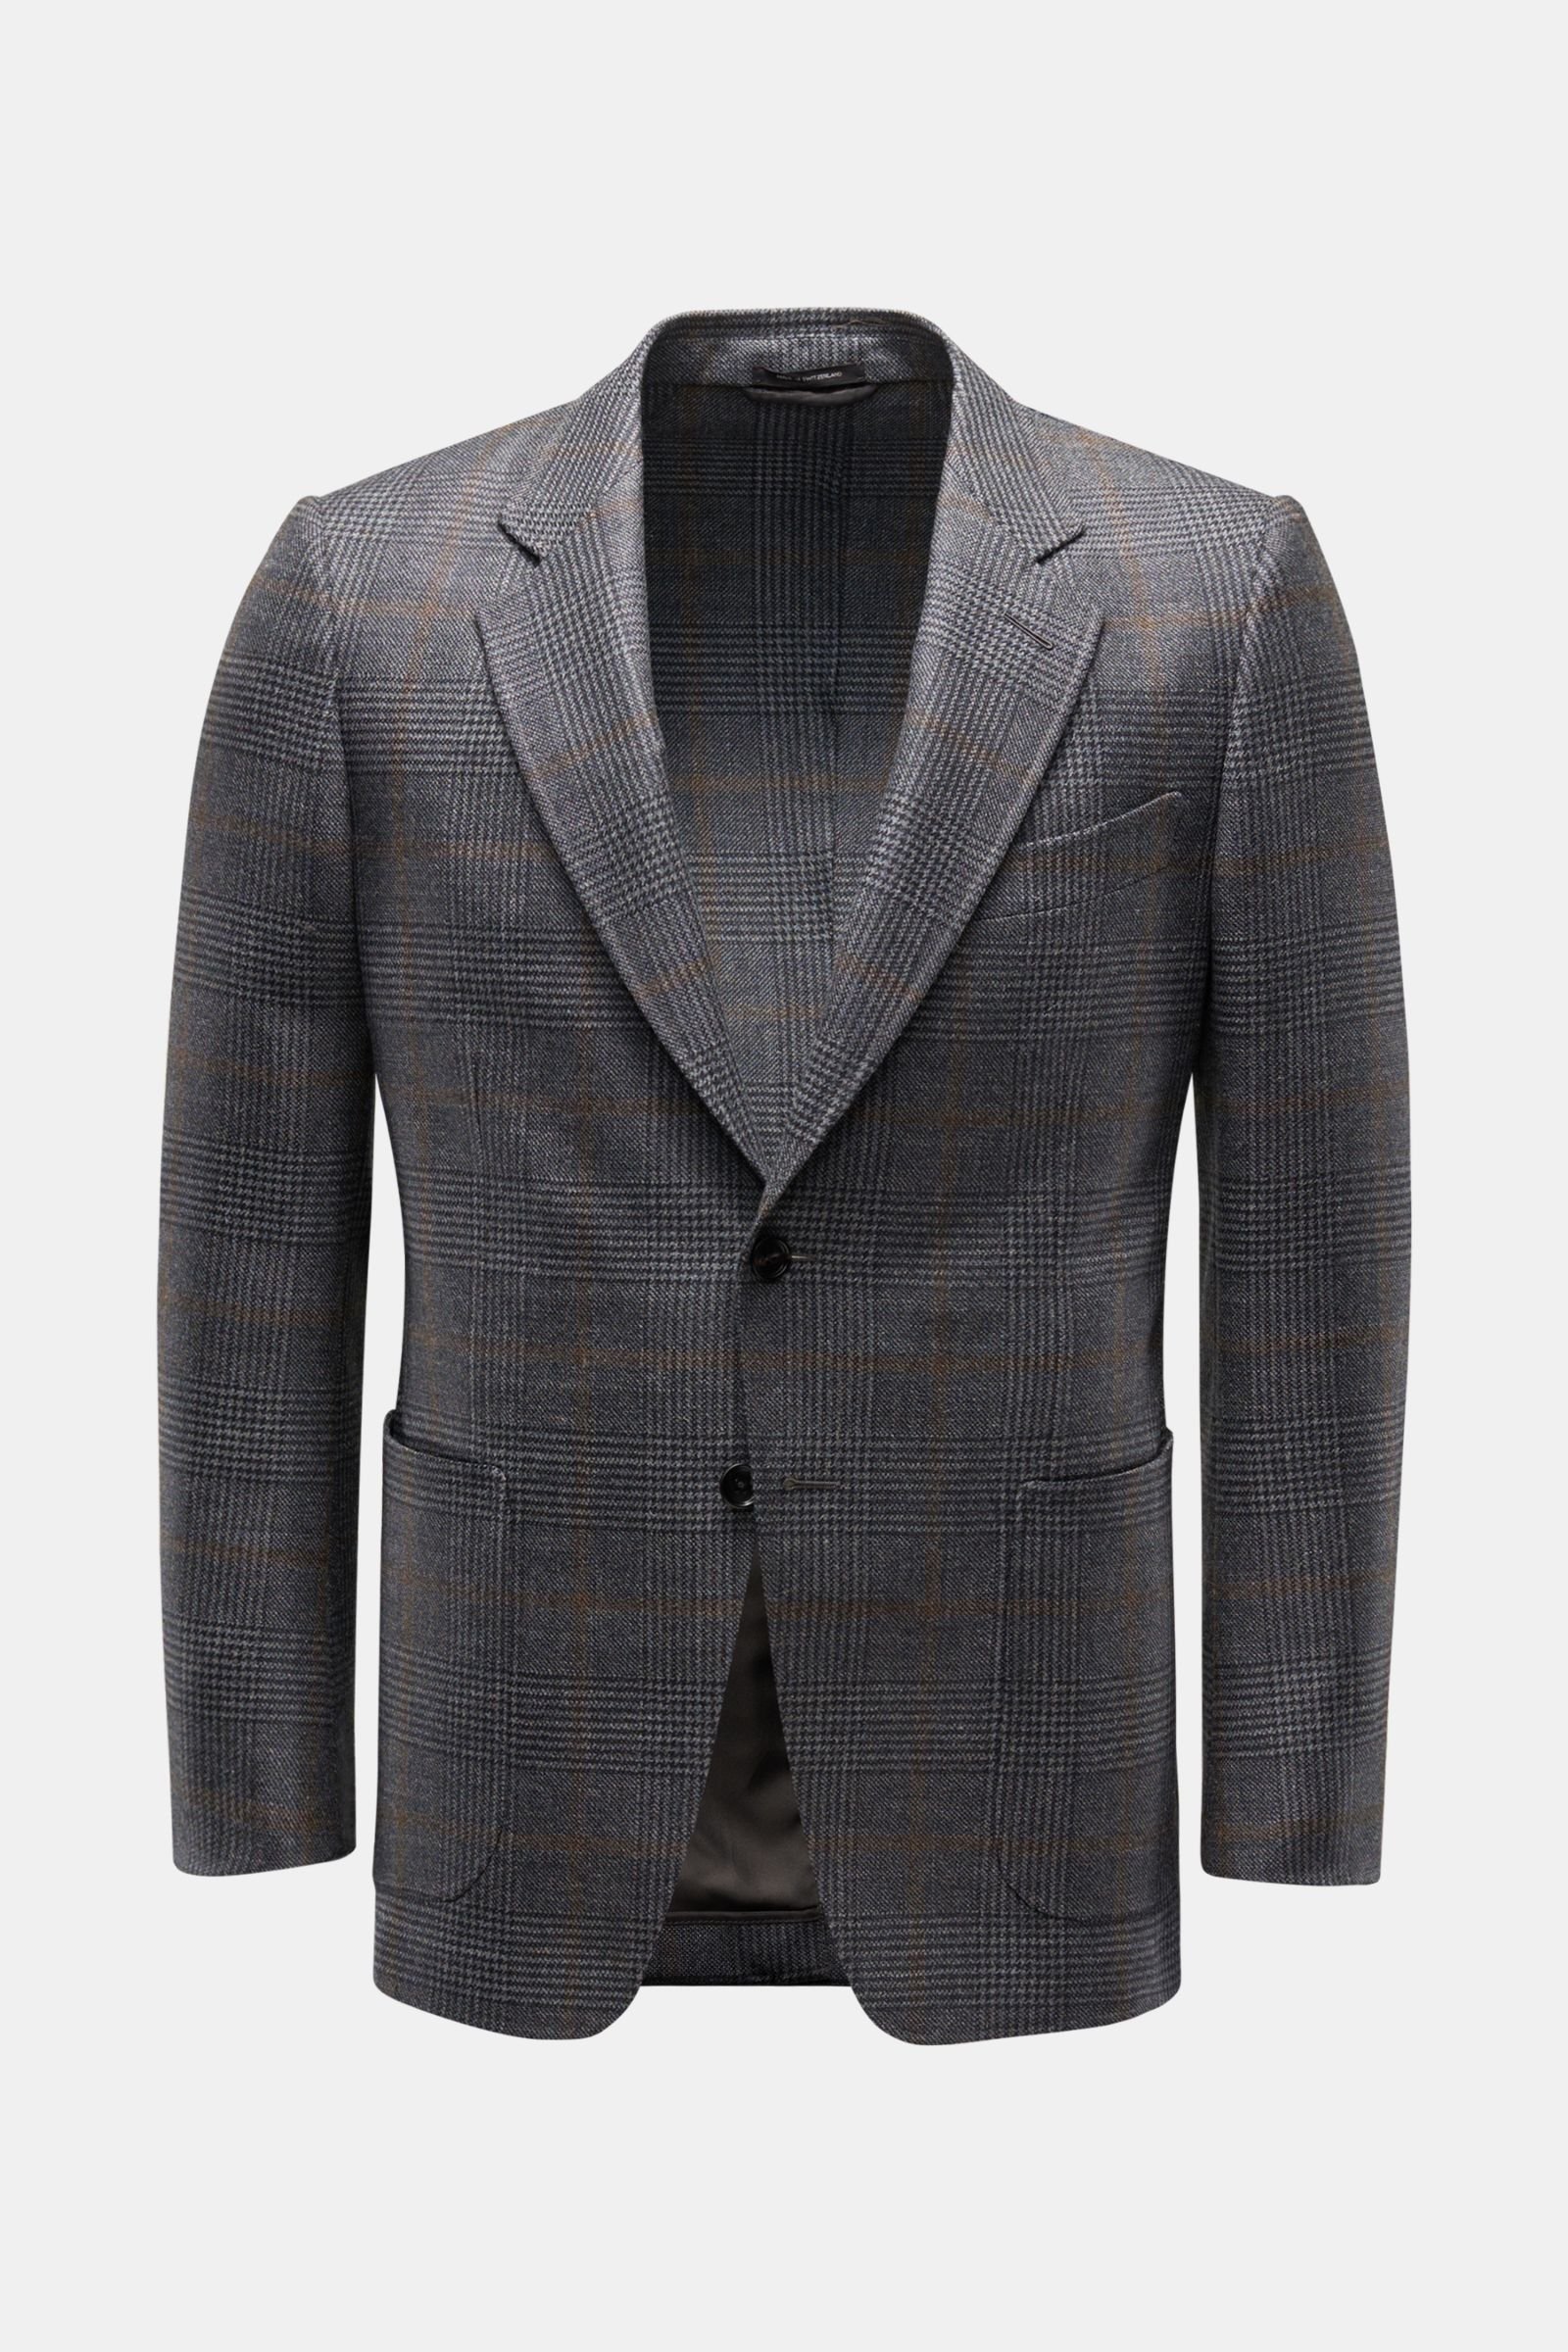 Smart-casual jacket 'O'Connor' dark grey/brown checked